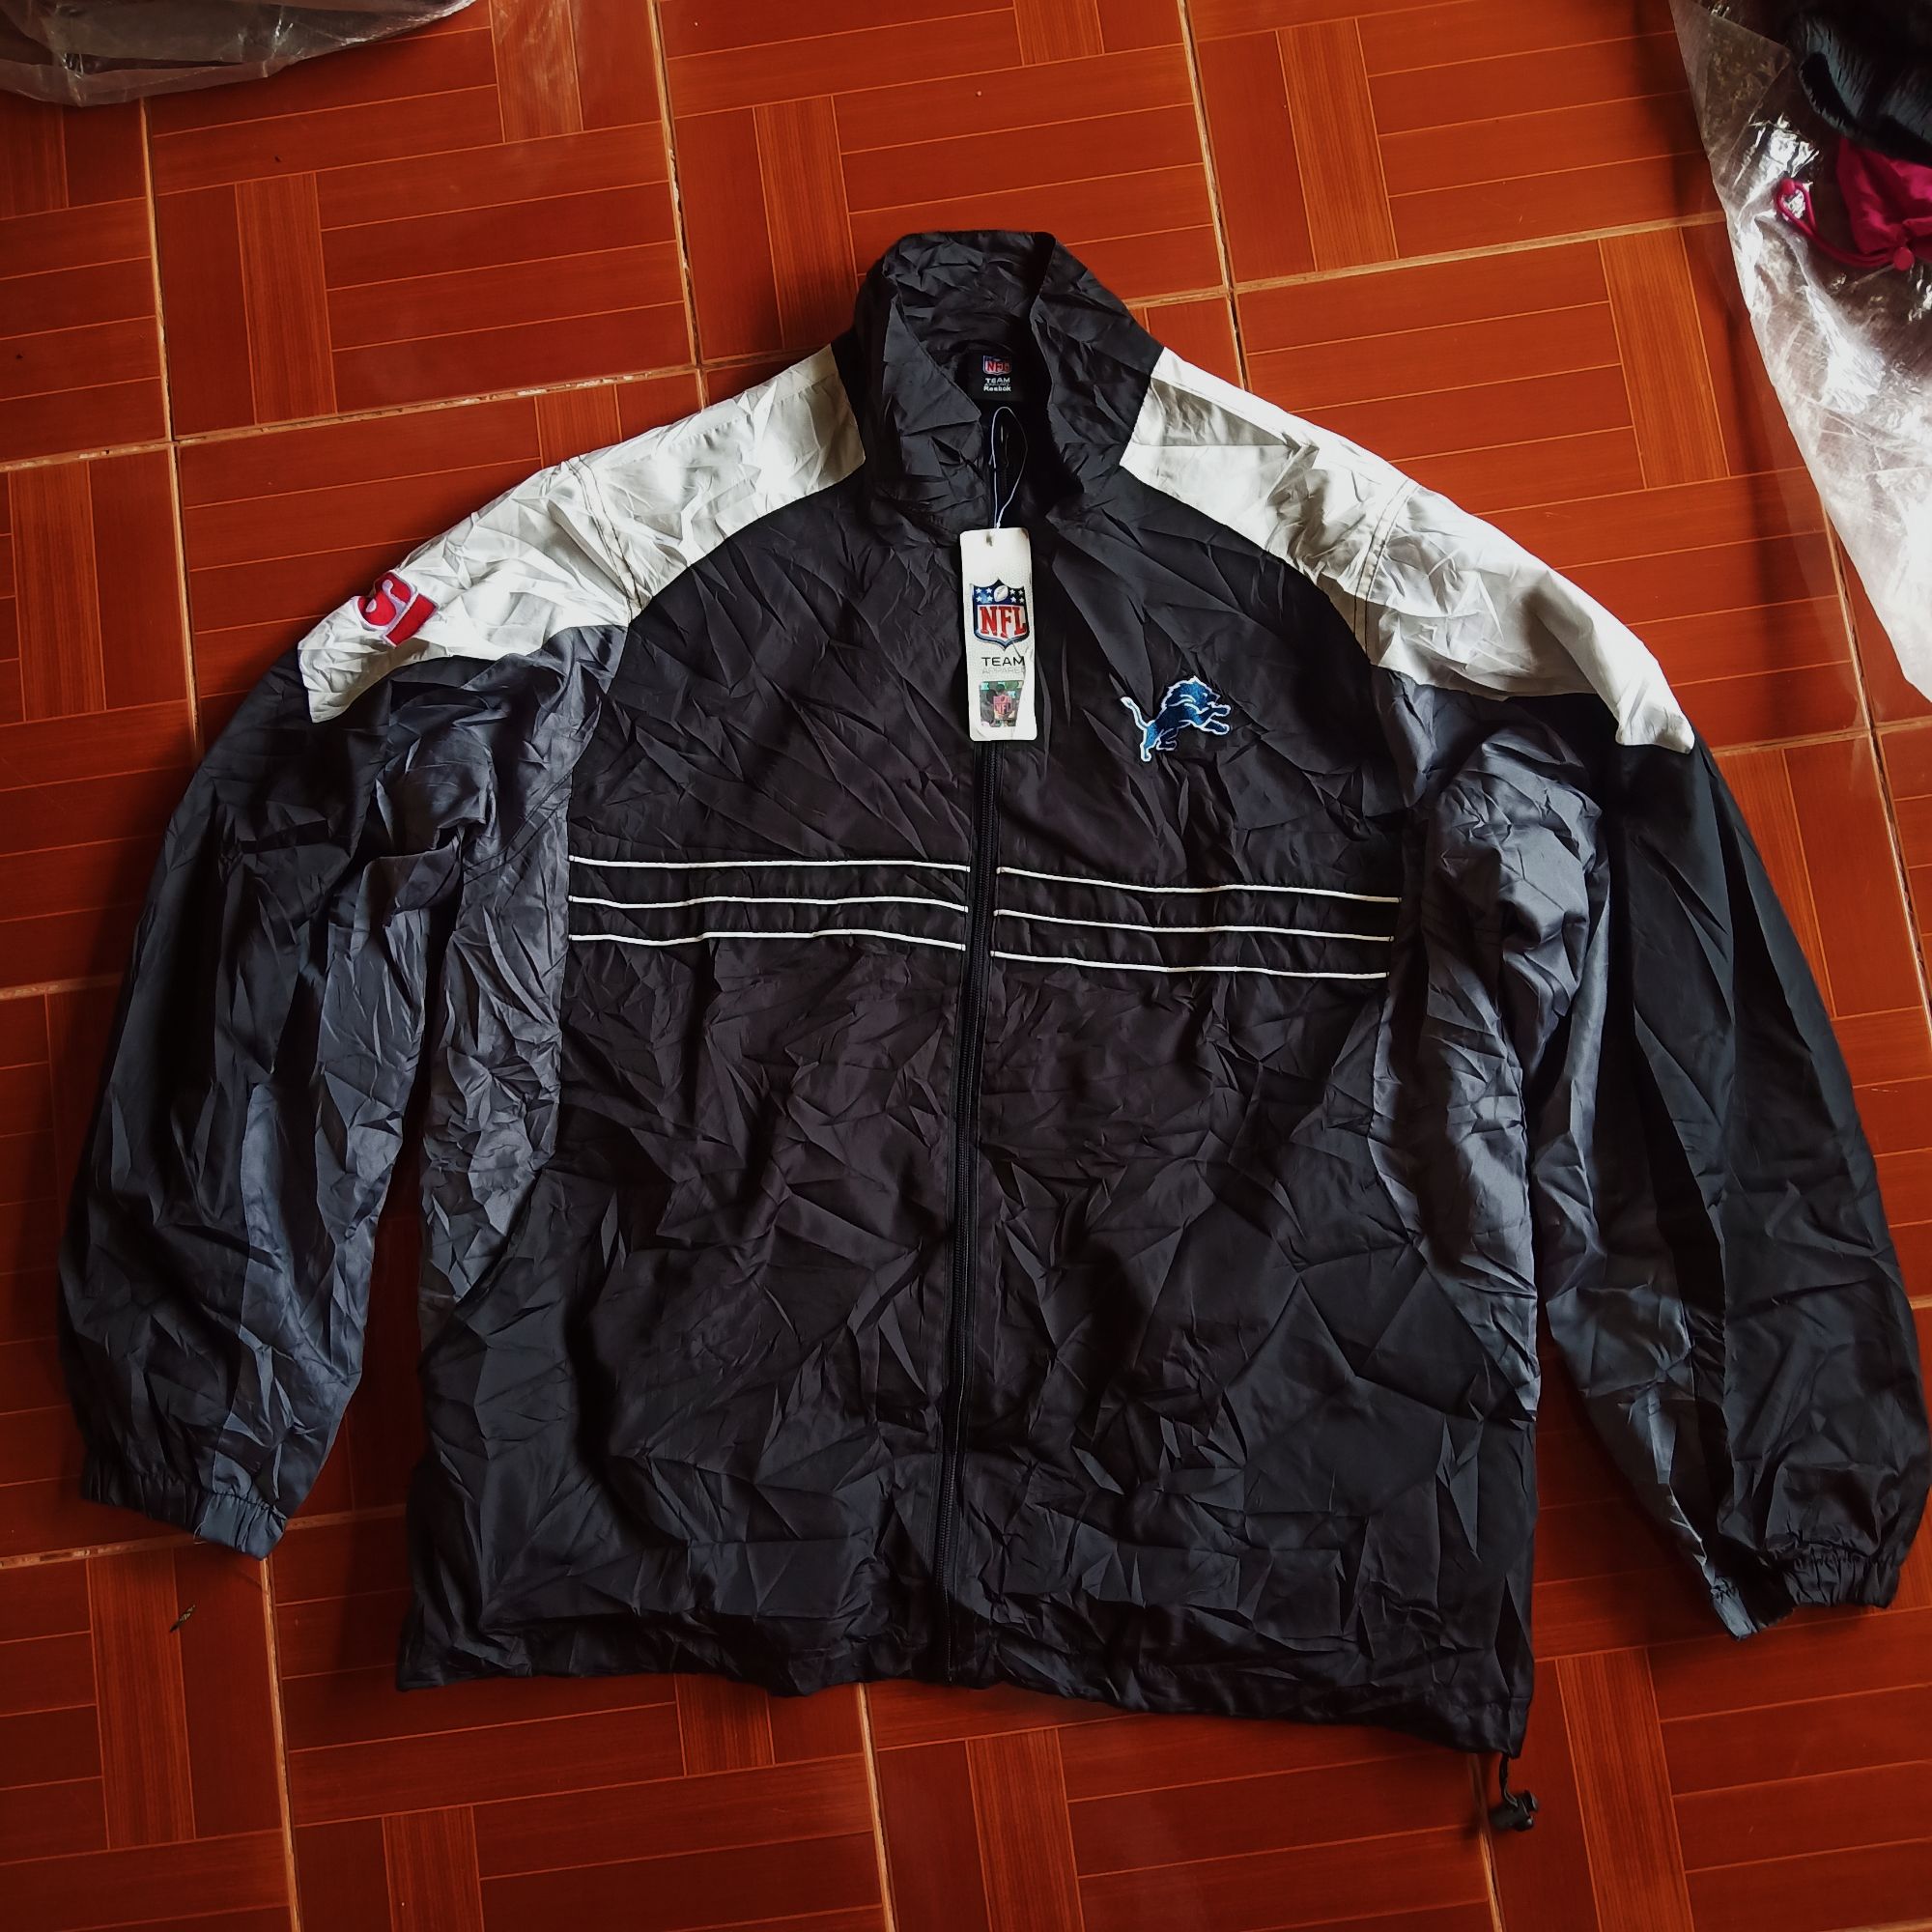 Jacket Reebok ราคาถูก ซื้อออนไลน์ที่ - ก.ค. 2022 | Lazada.co.th